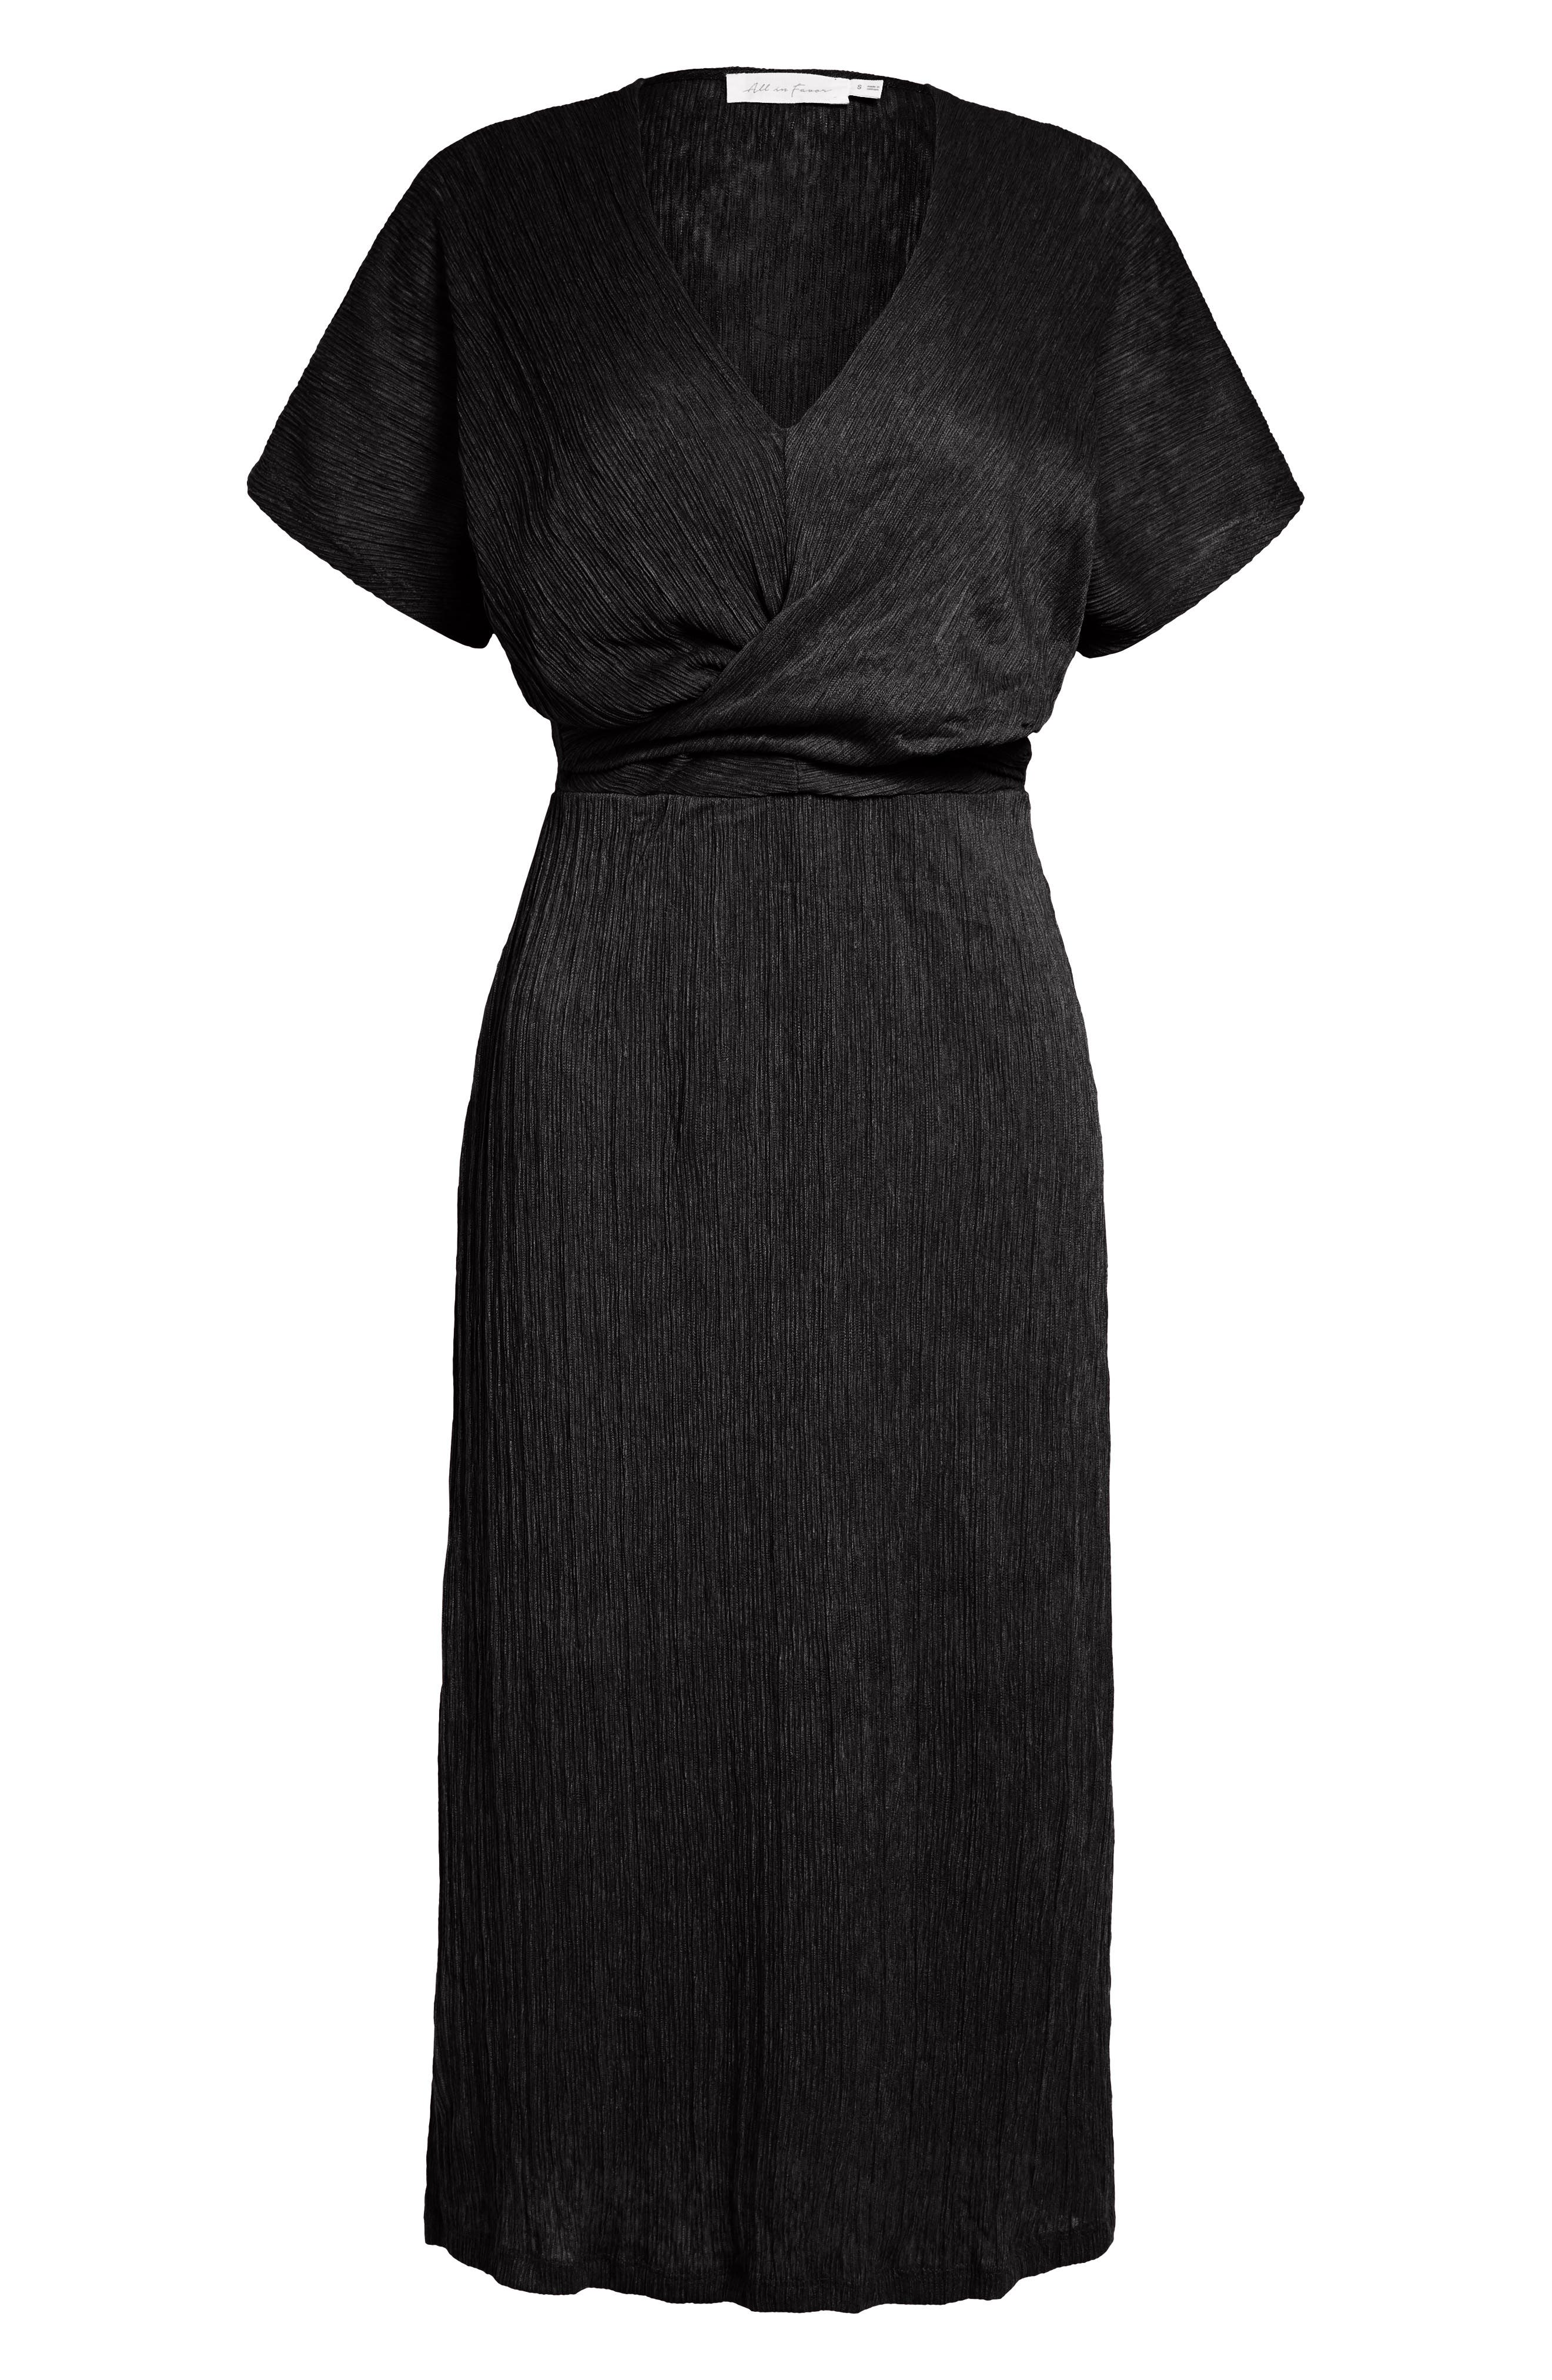 nordstrom black and white dress